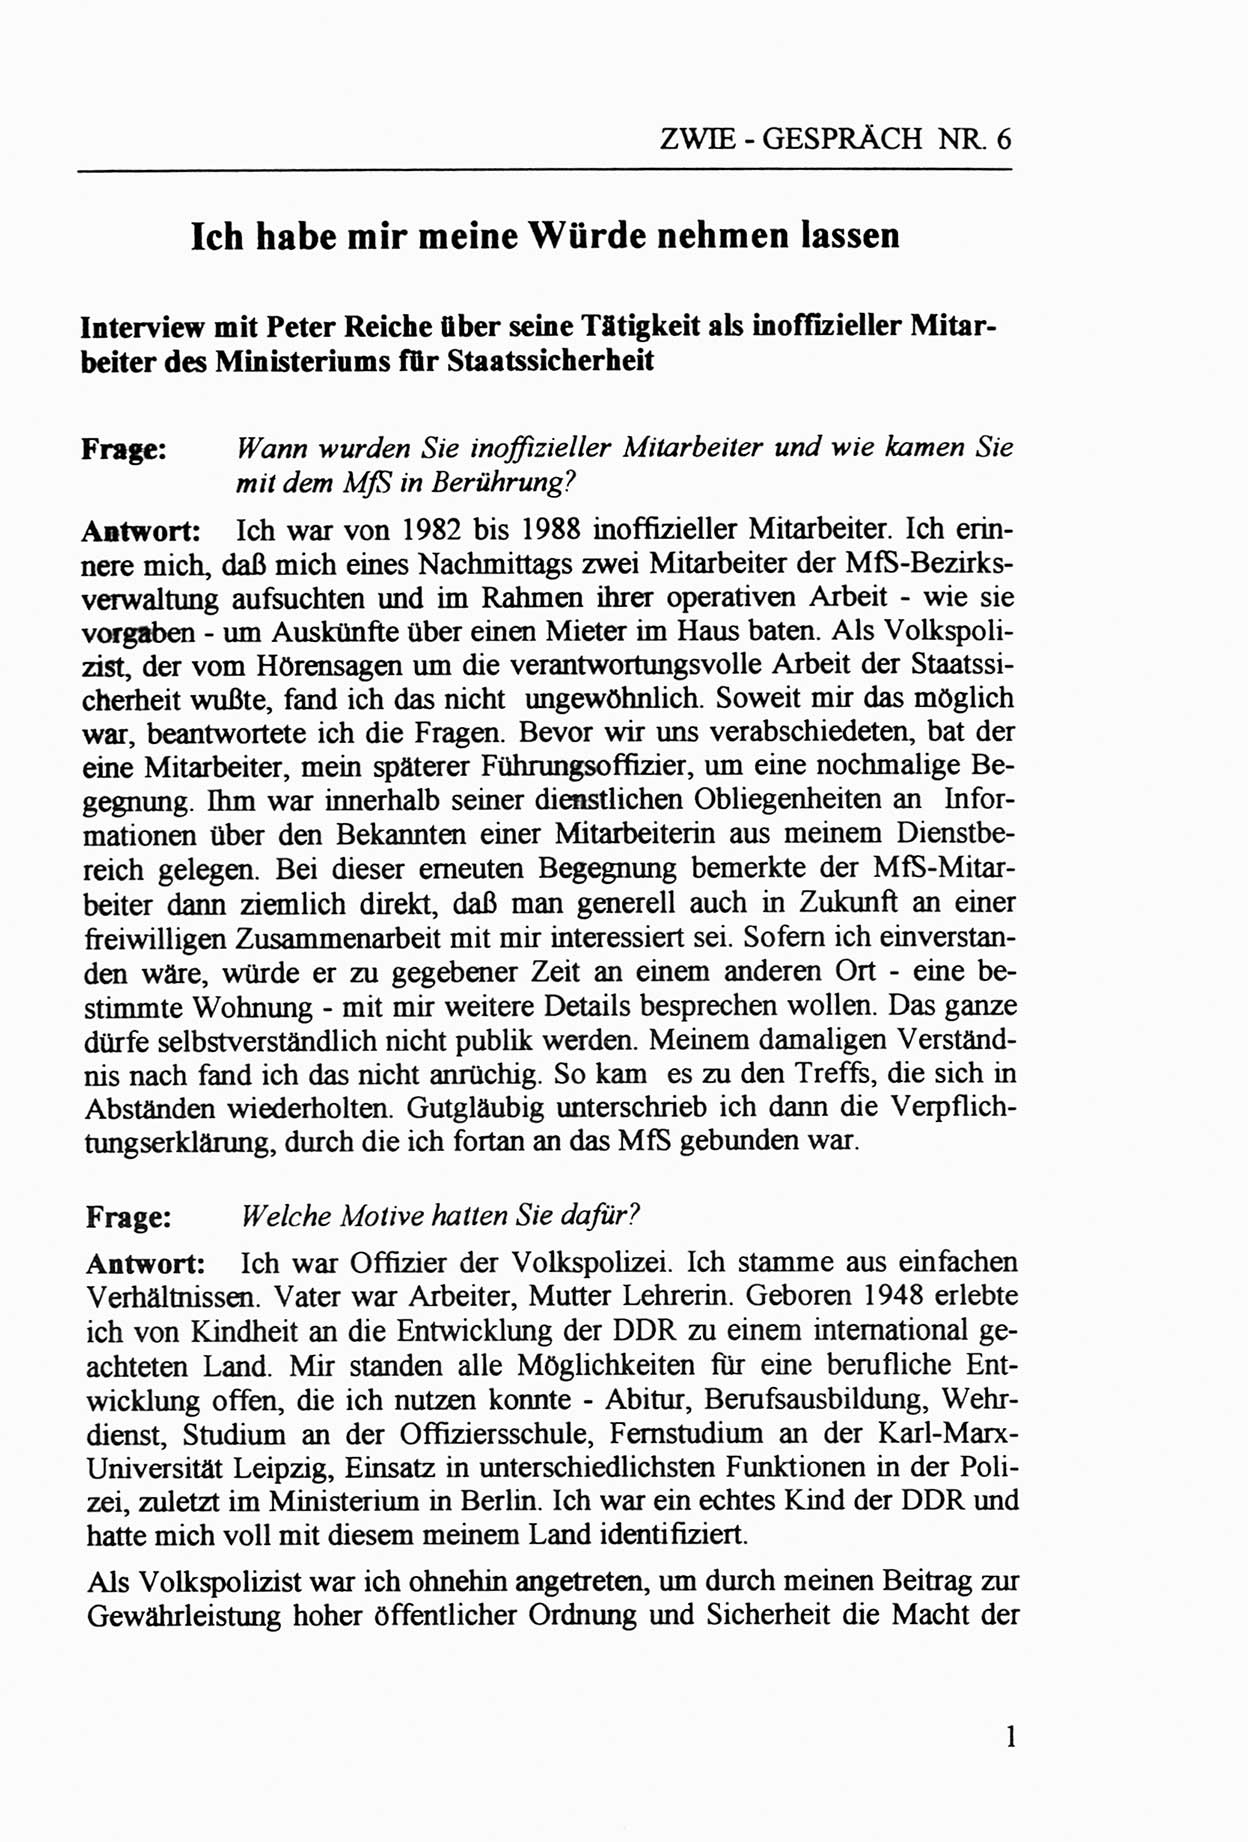 Zwie-Gespräch, Beiträge zur Aufarbeitung der Staatssicherheits-Vergangenheit [Deutsche Demokratische Republik (DDR)], Ausgabe Nr. 6, Berlin 1992, Seite 1 (Zwie-Gespr. Ausg. 6 1992, S. 1)